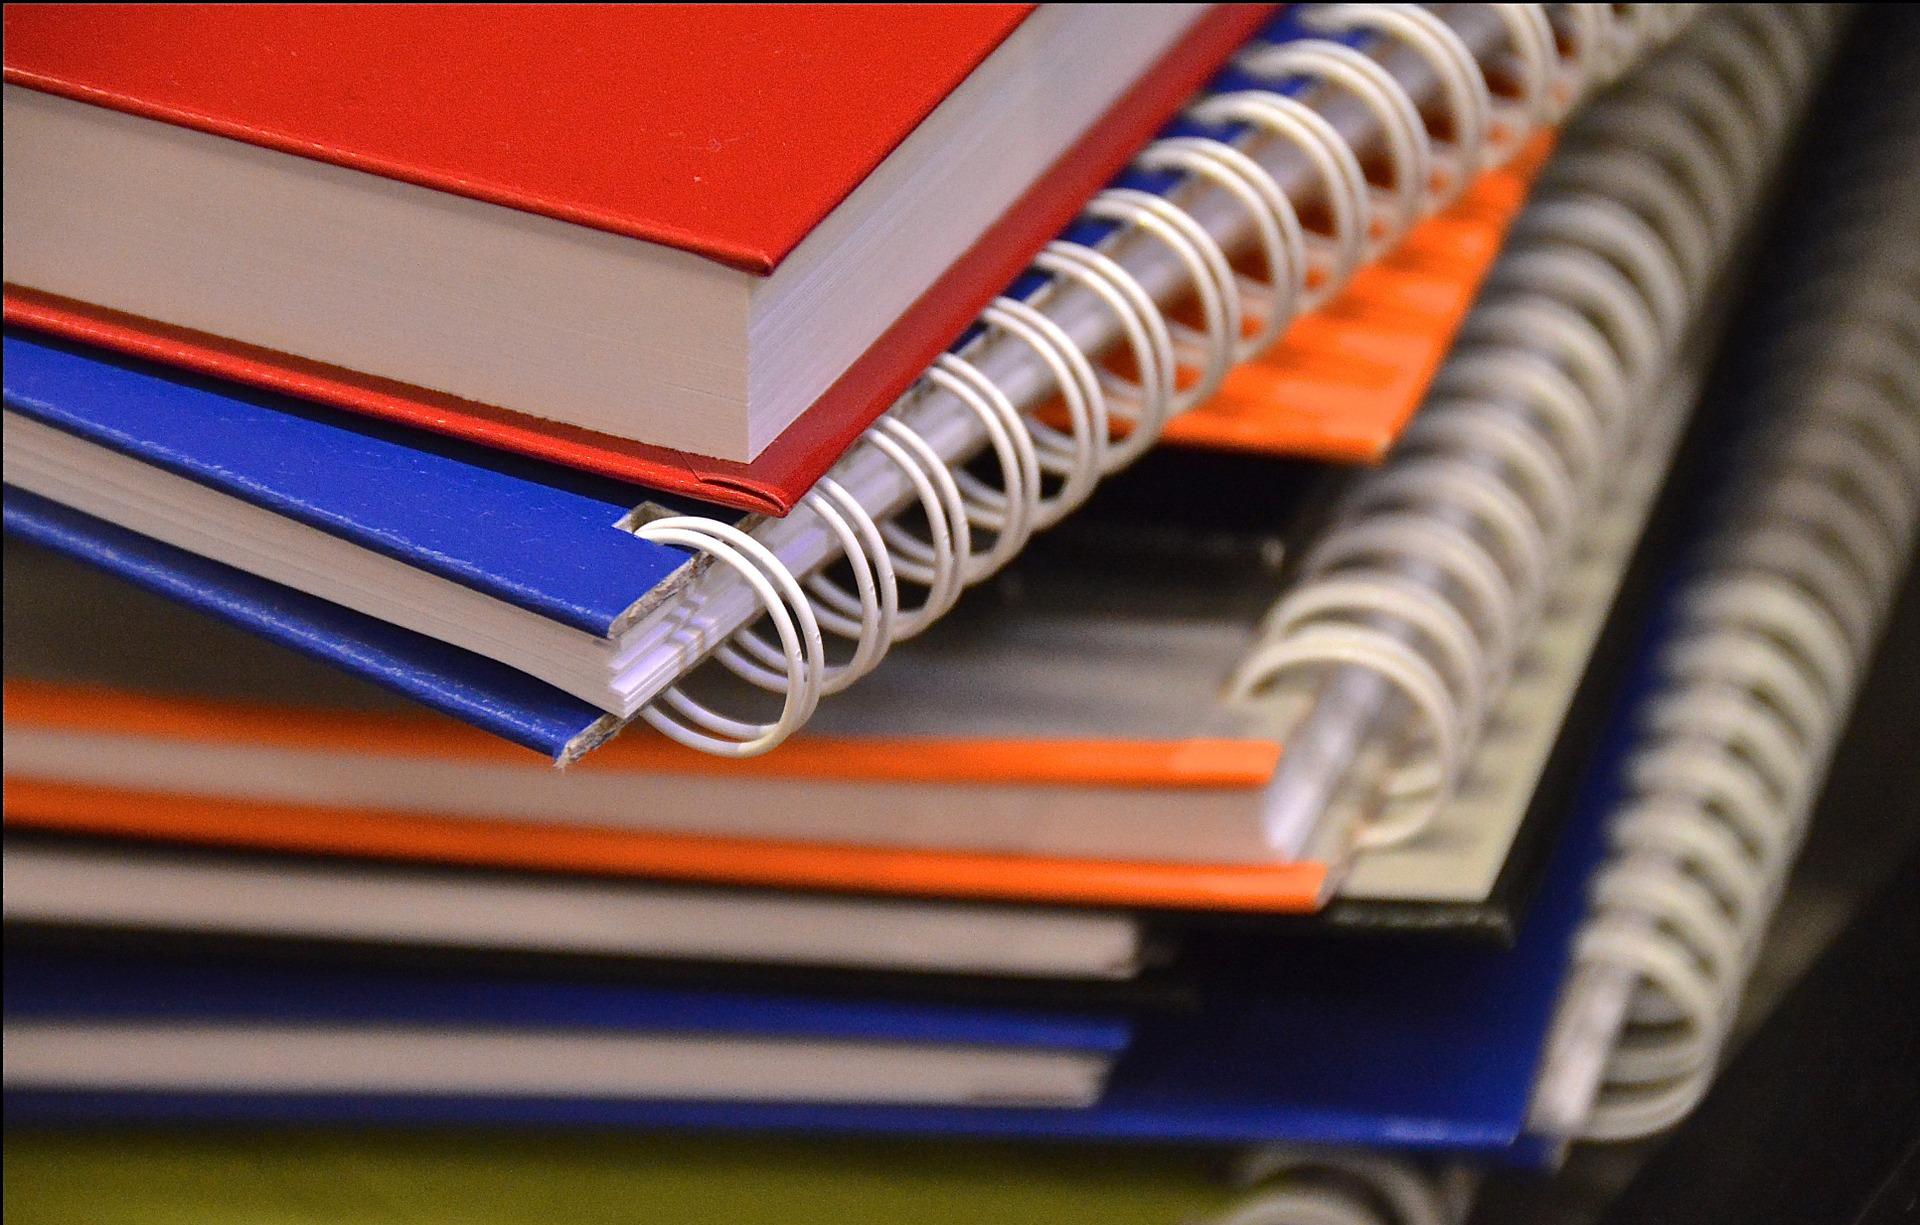 Image of notebooks courtesy of Pixabay